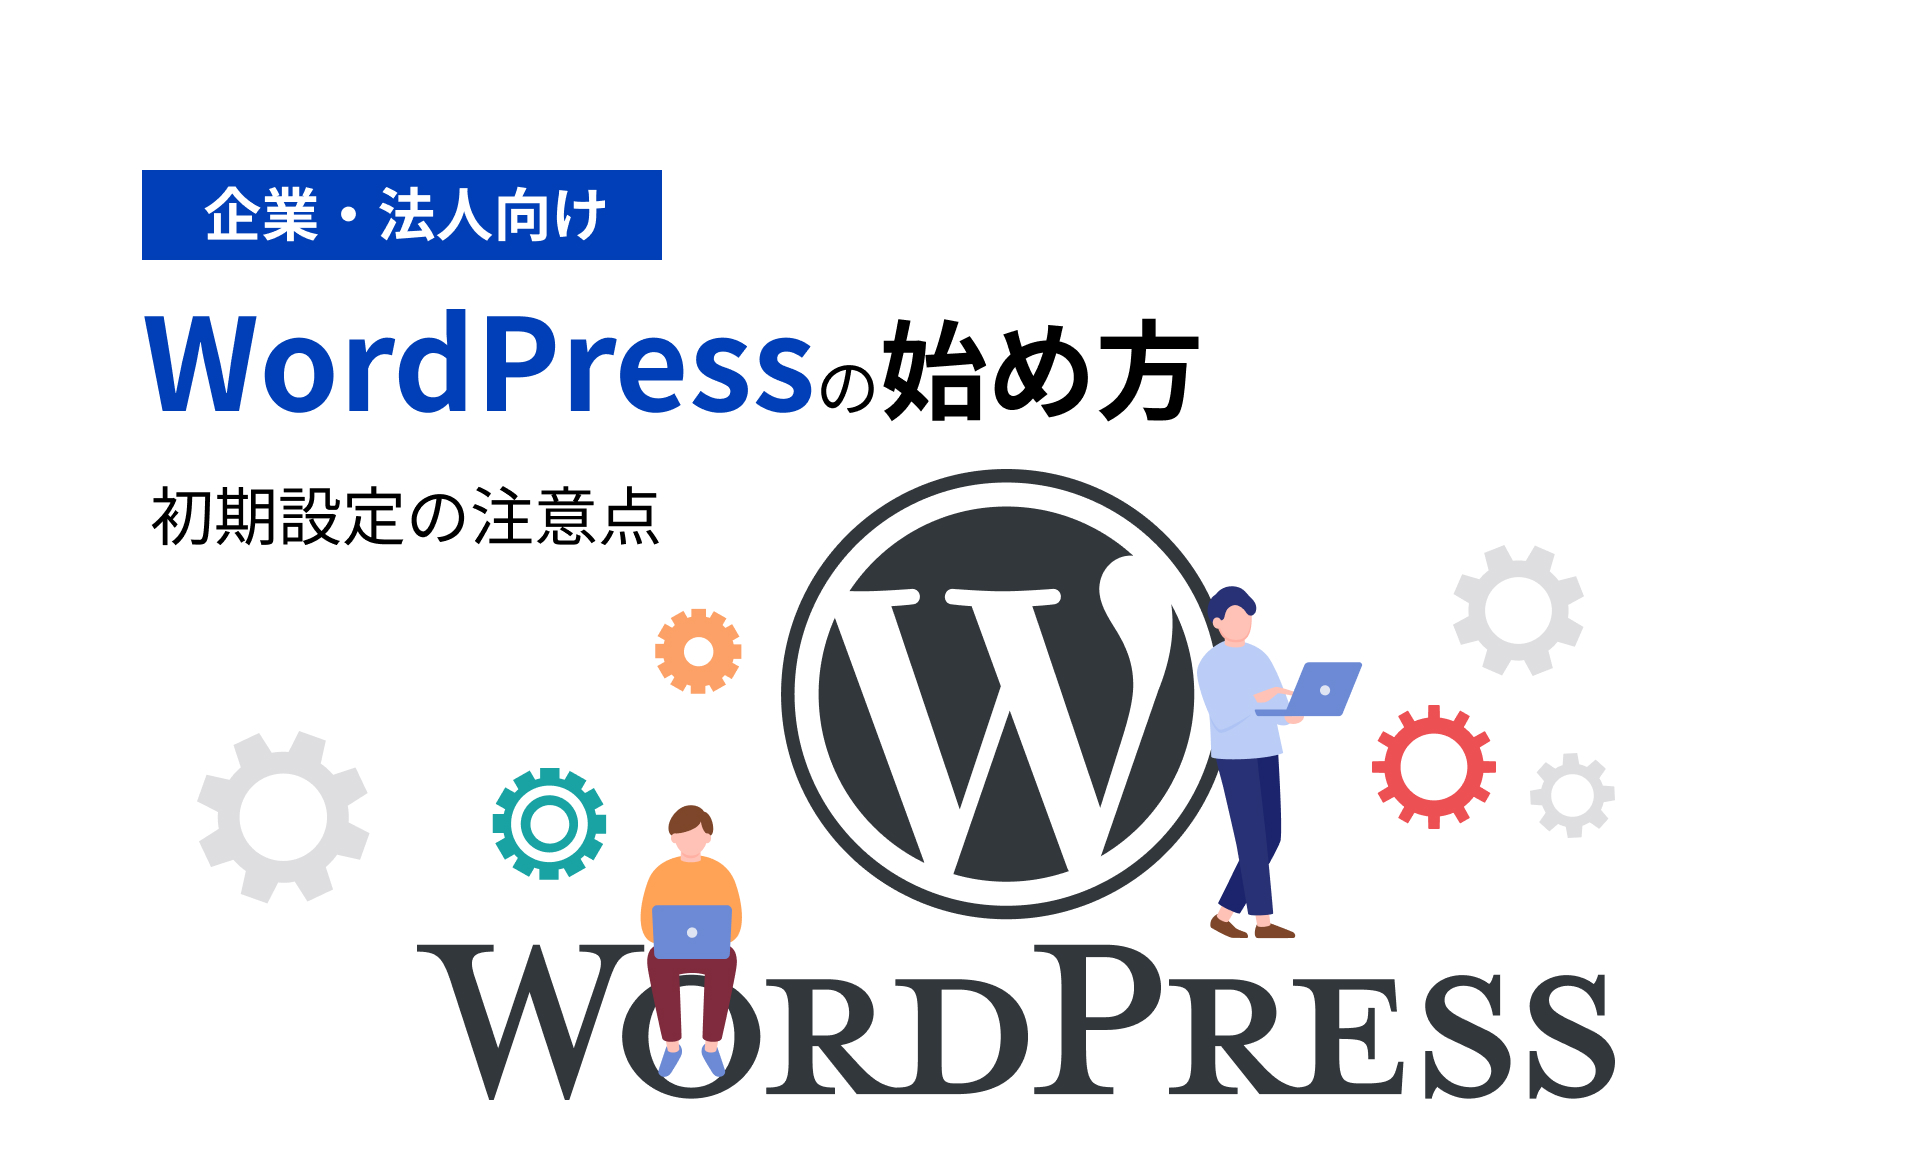 【企業・法人向け】WordPressの始め方・初期設定の注意点